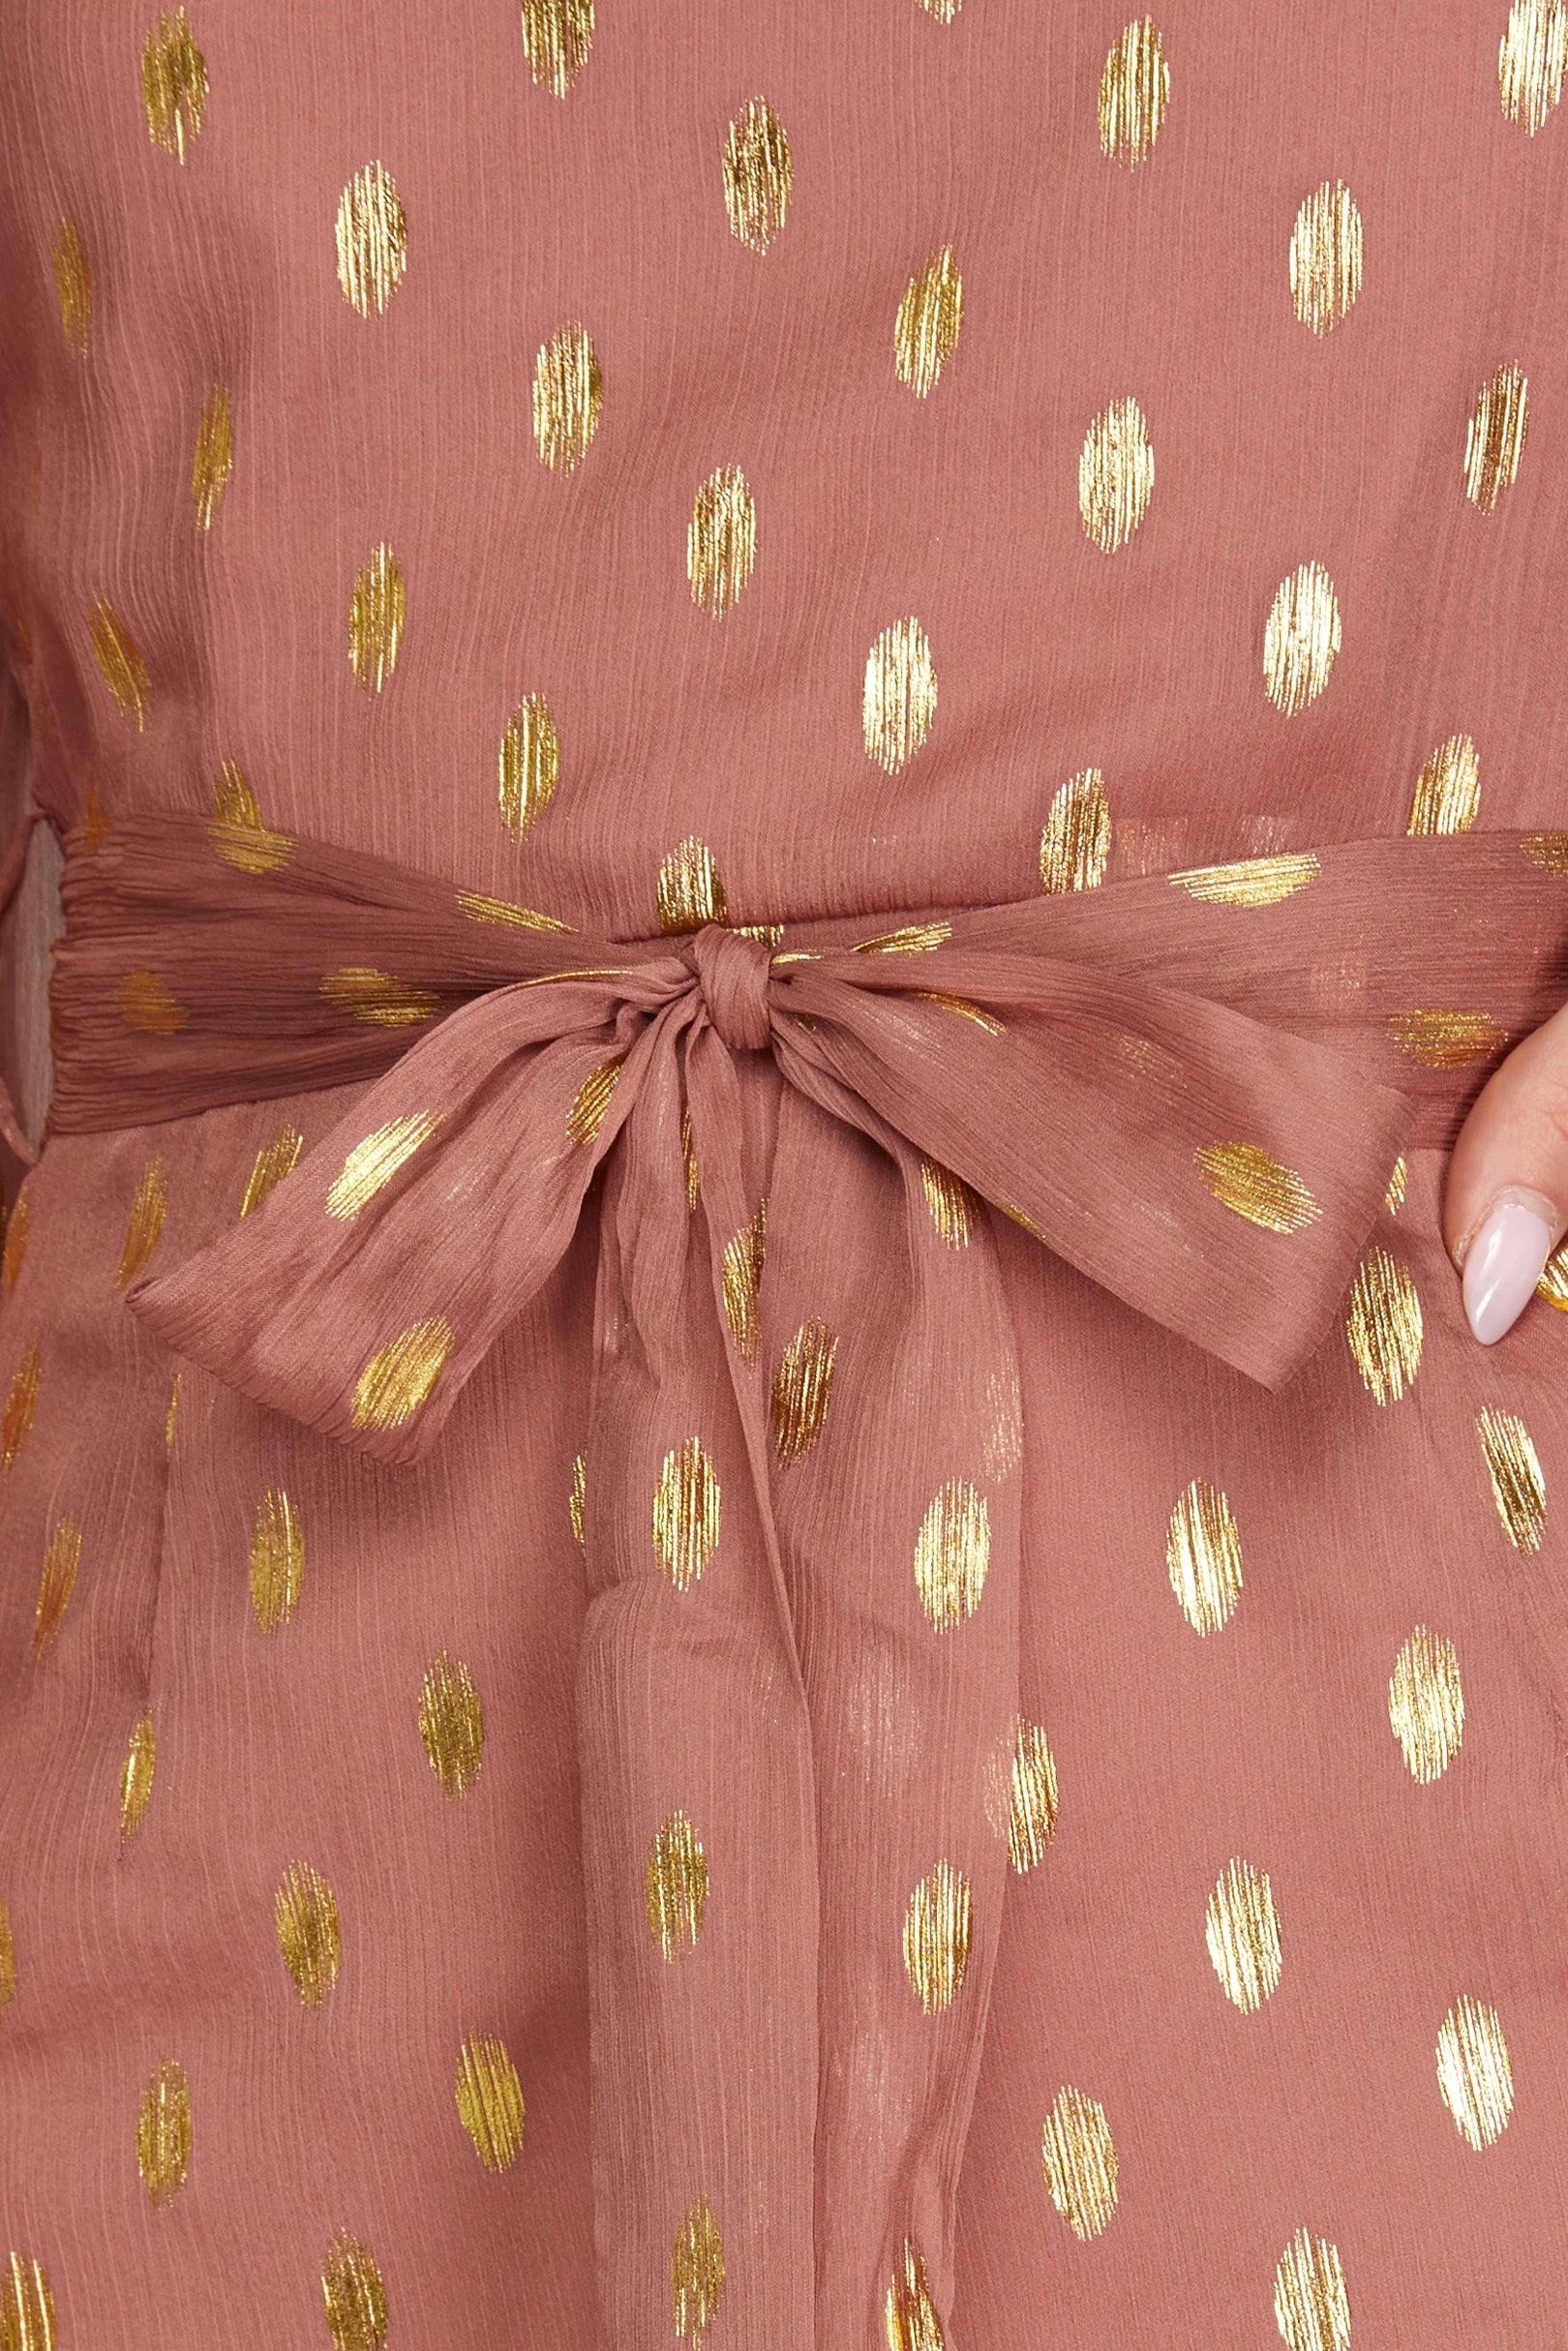 Sale Long Sleeve Gold-Dot Chiffon Dress